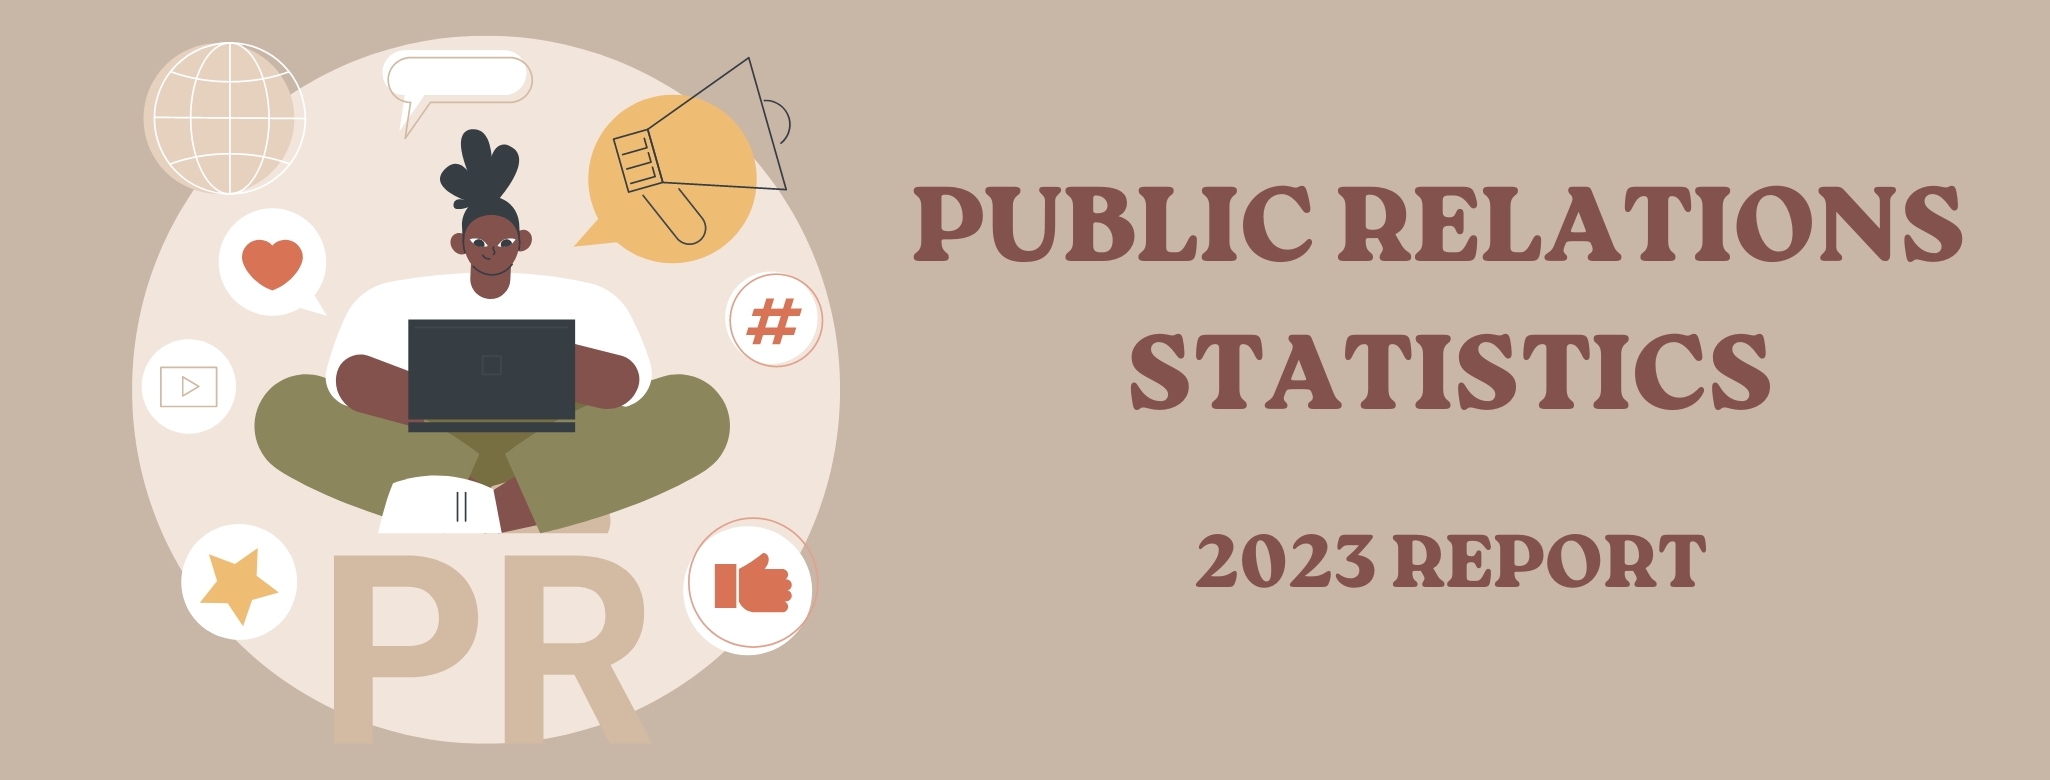 public relations statistics